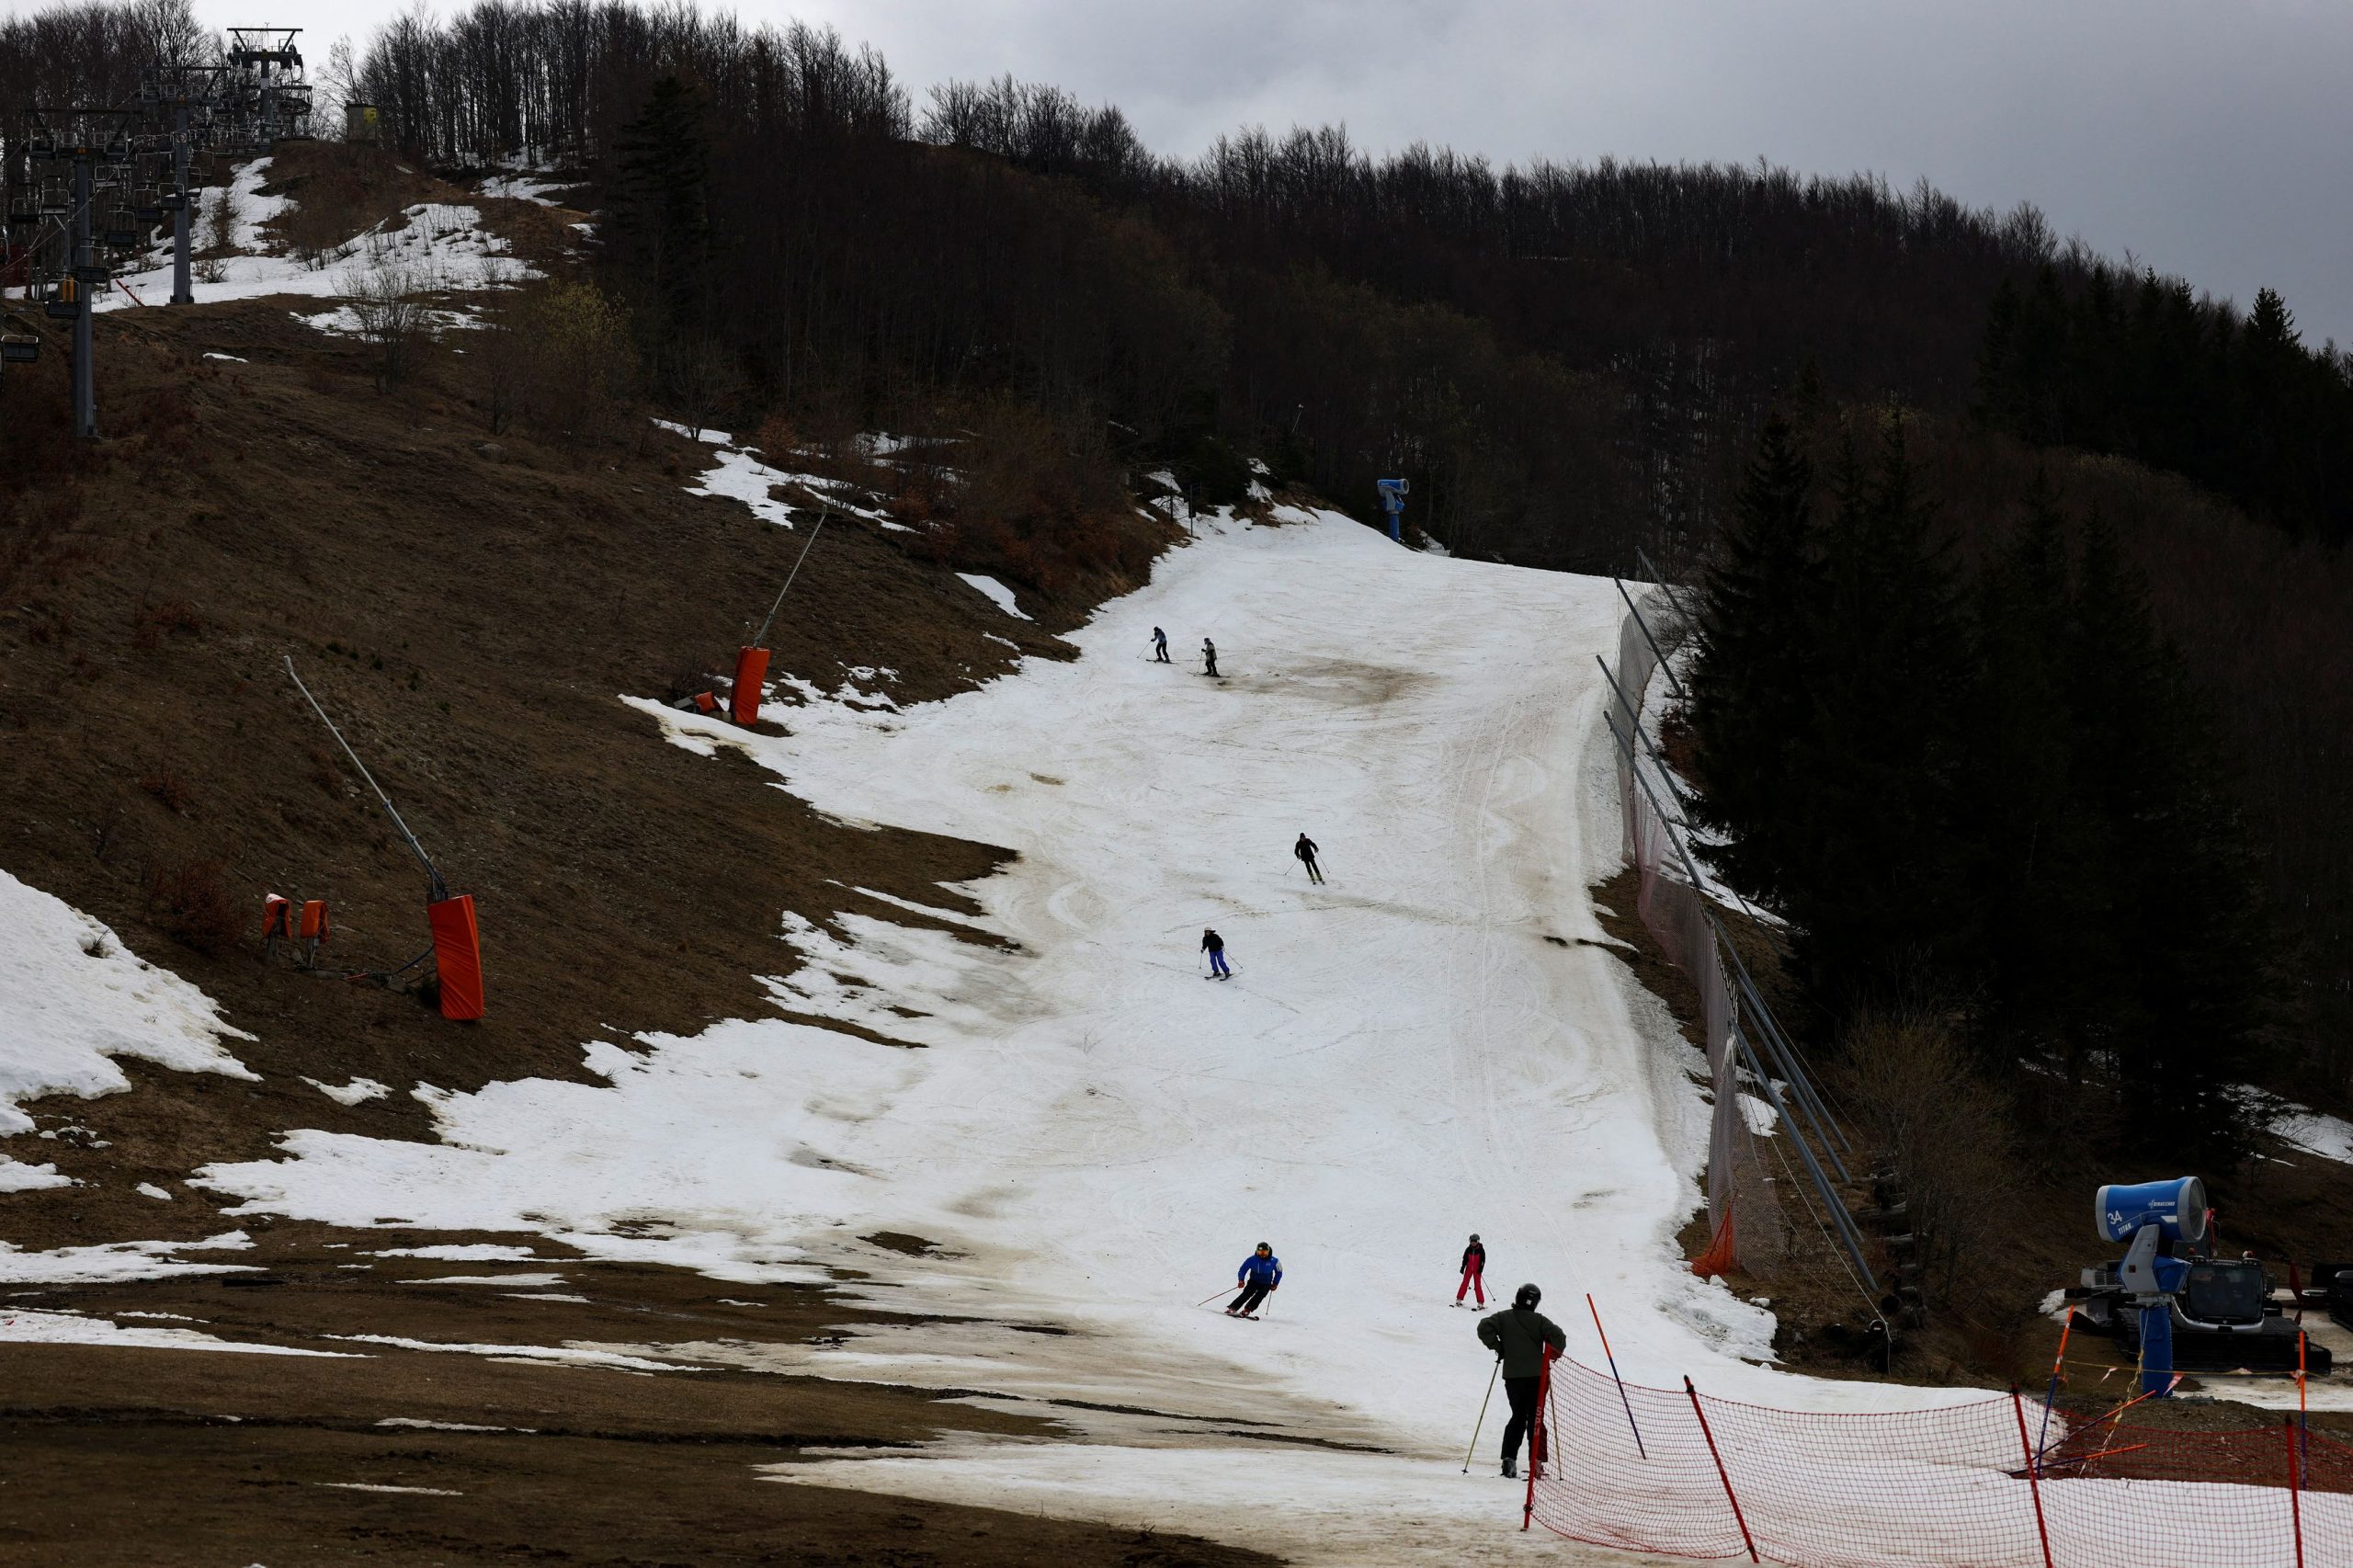 Ιταλία: Η βιομηχανία σκι επιστρατεύει… κανόνια κατά της κλιματικής αλλαγής